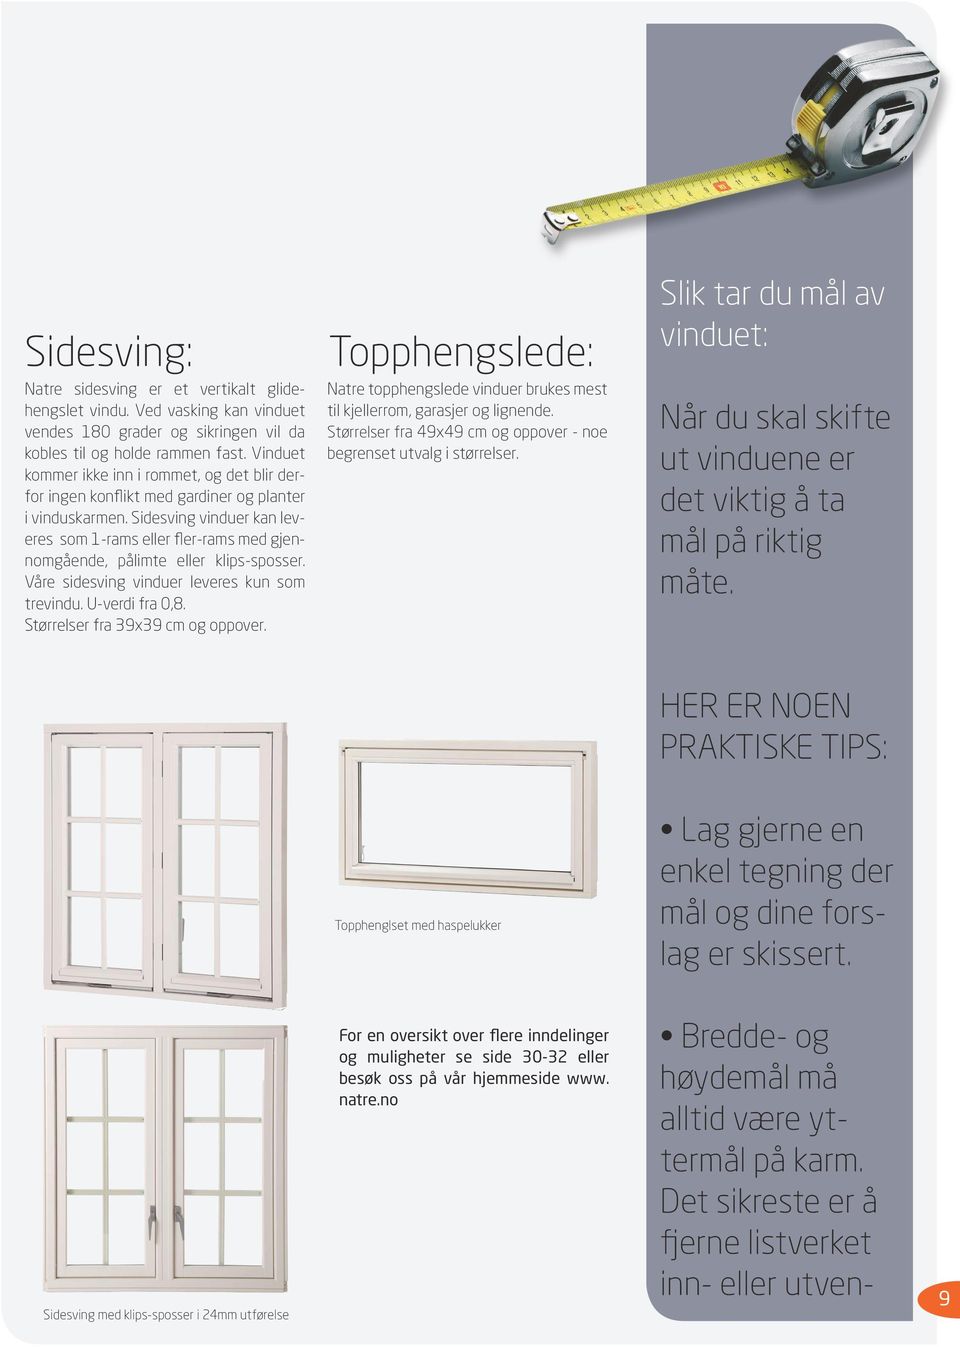 Sidesving vinduer kan leveres som 1-rams eller fler-rams med gjennomgående, pålimte eller klips-sposser. Våre sidesving vinduer leveres kun som trevindu. U-verdi fra 0,8.